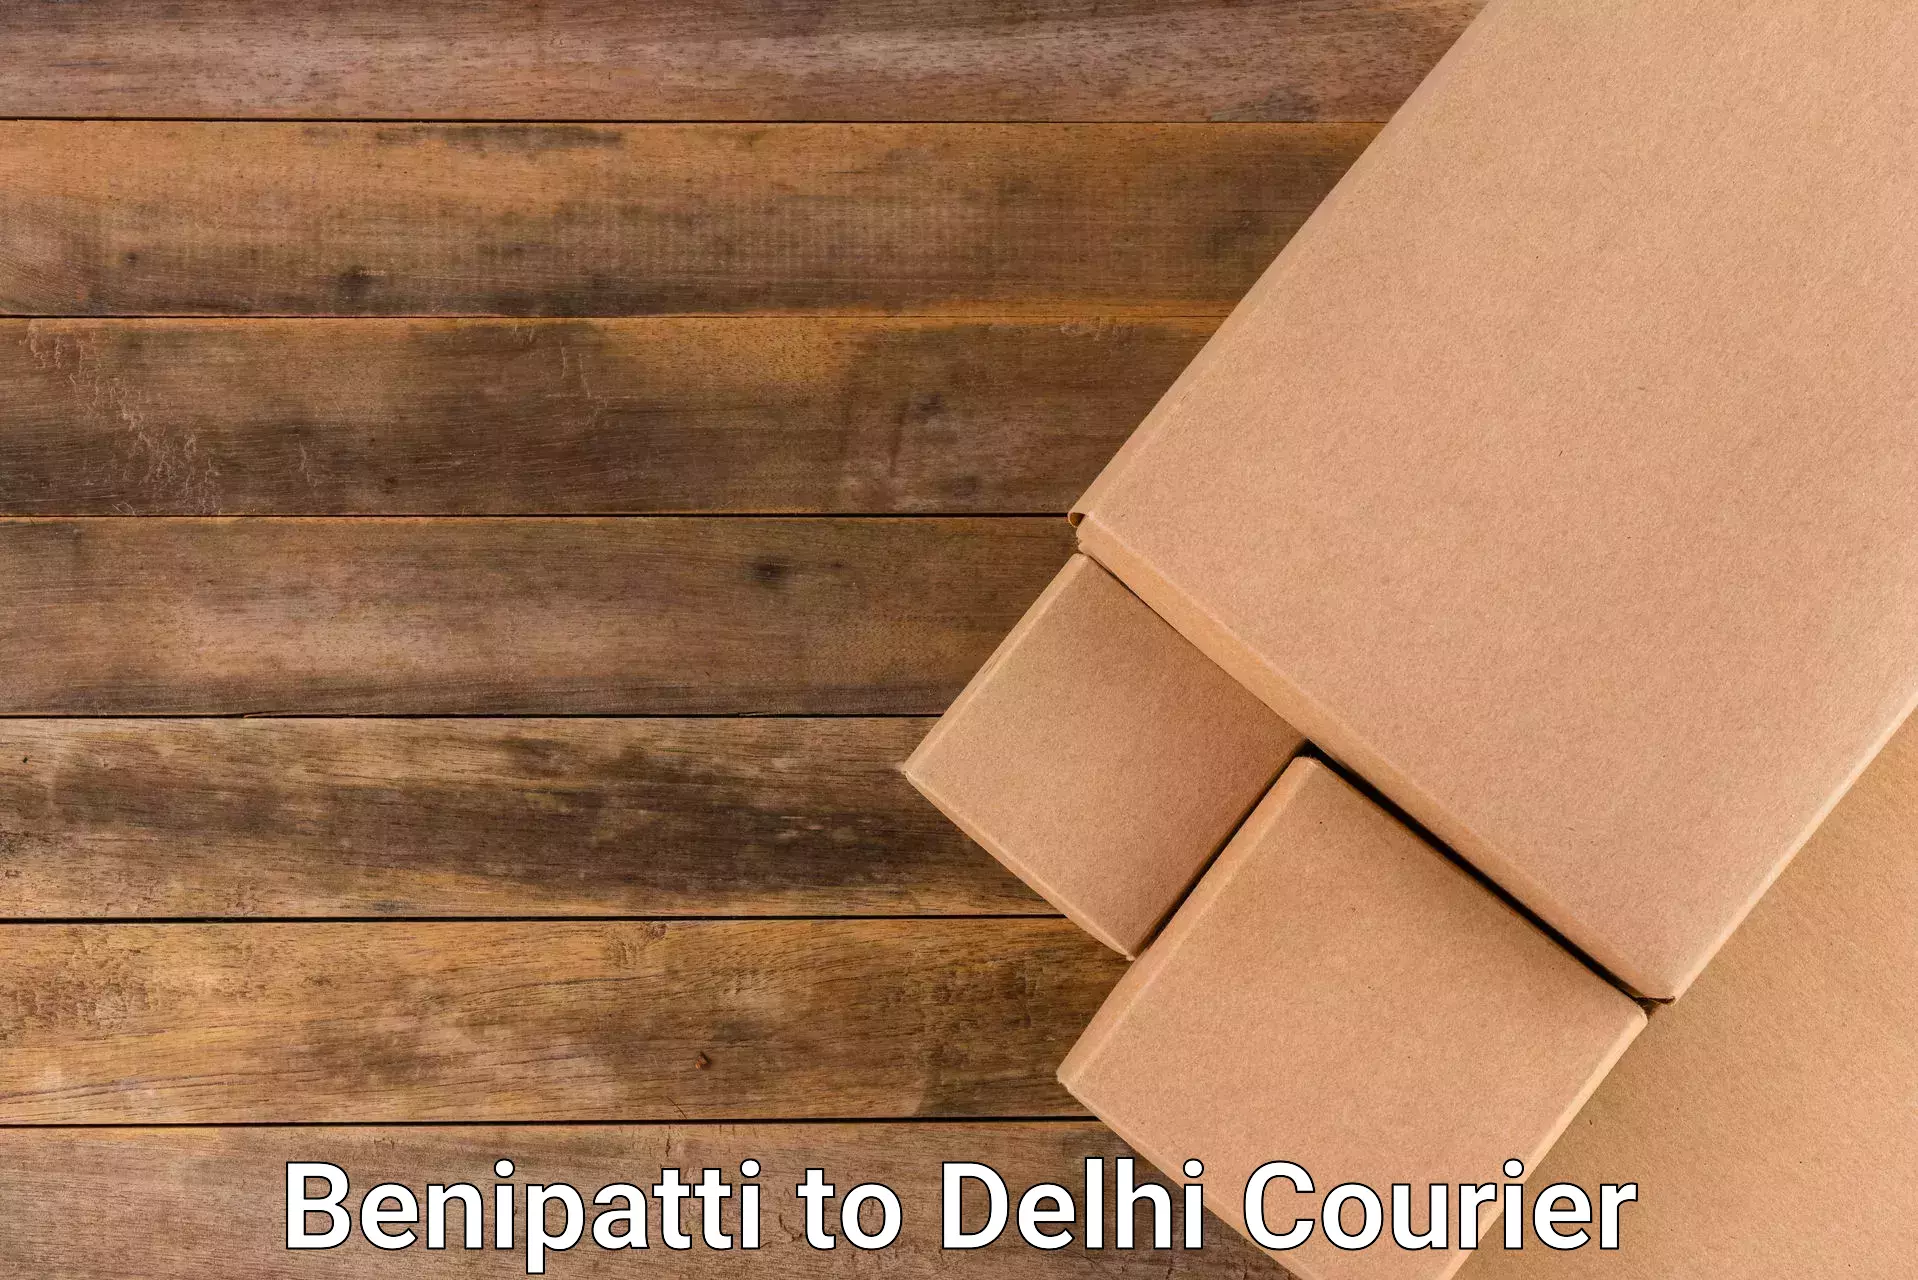 Digital shipping tools Benipatti to University of Delhi